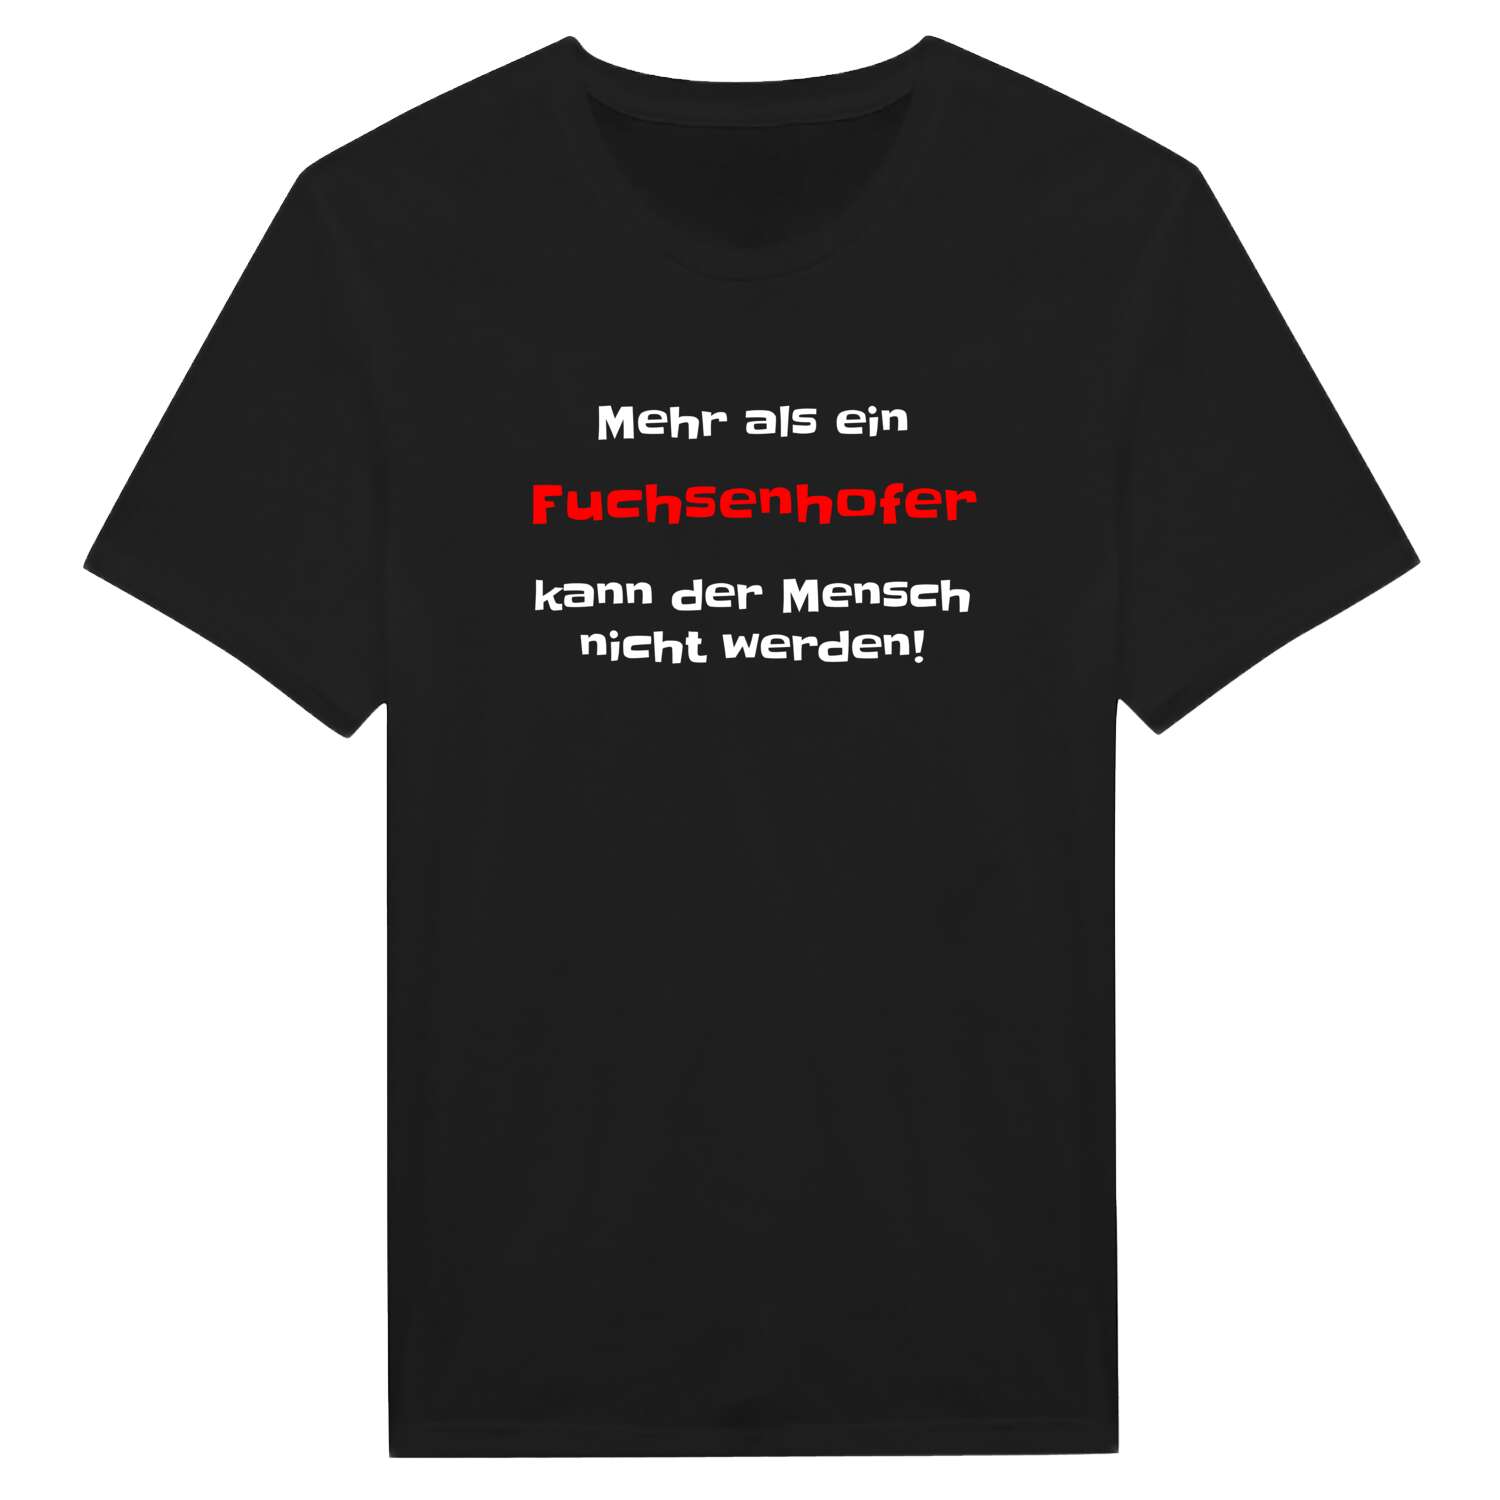 Fuchsenhof T-Shirt »Mehr als ein«